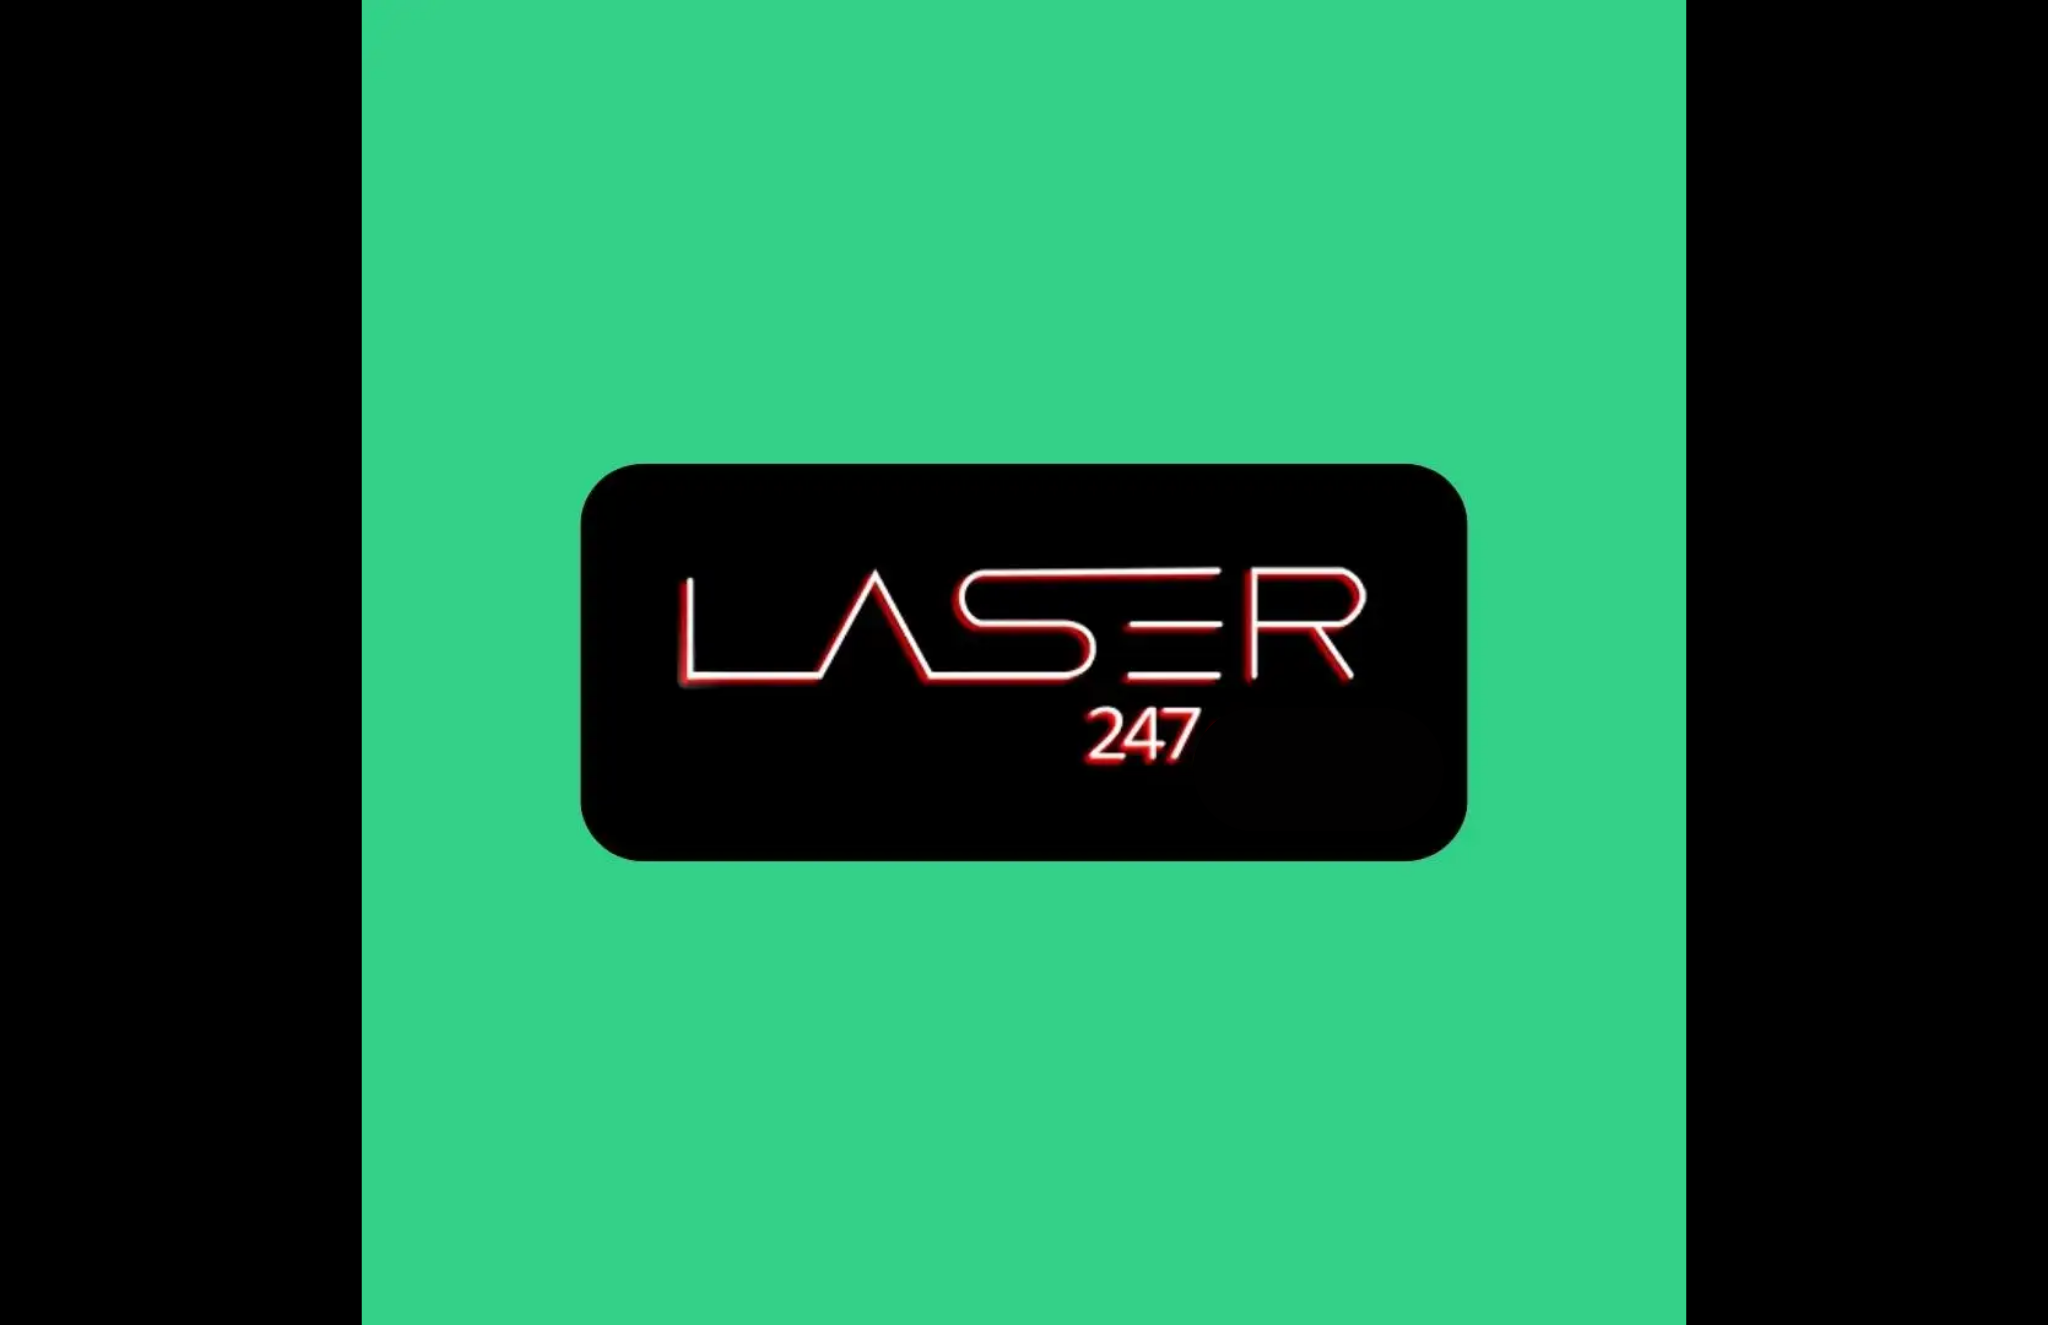 Laser247